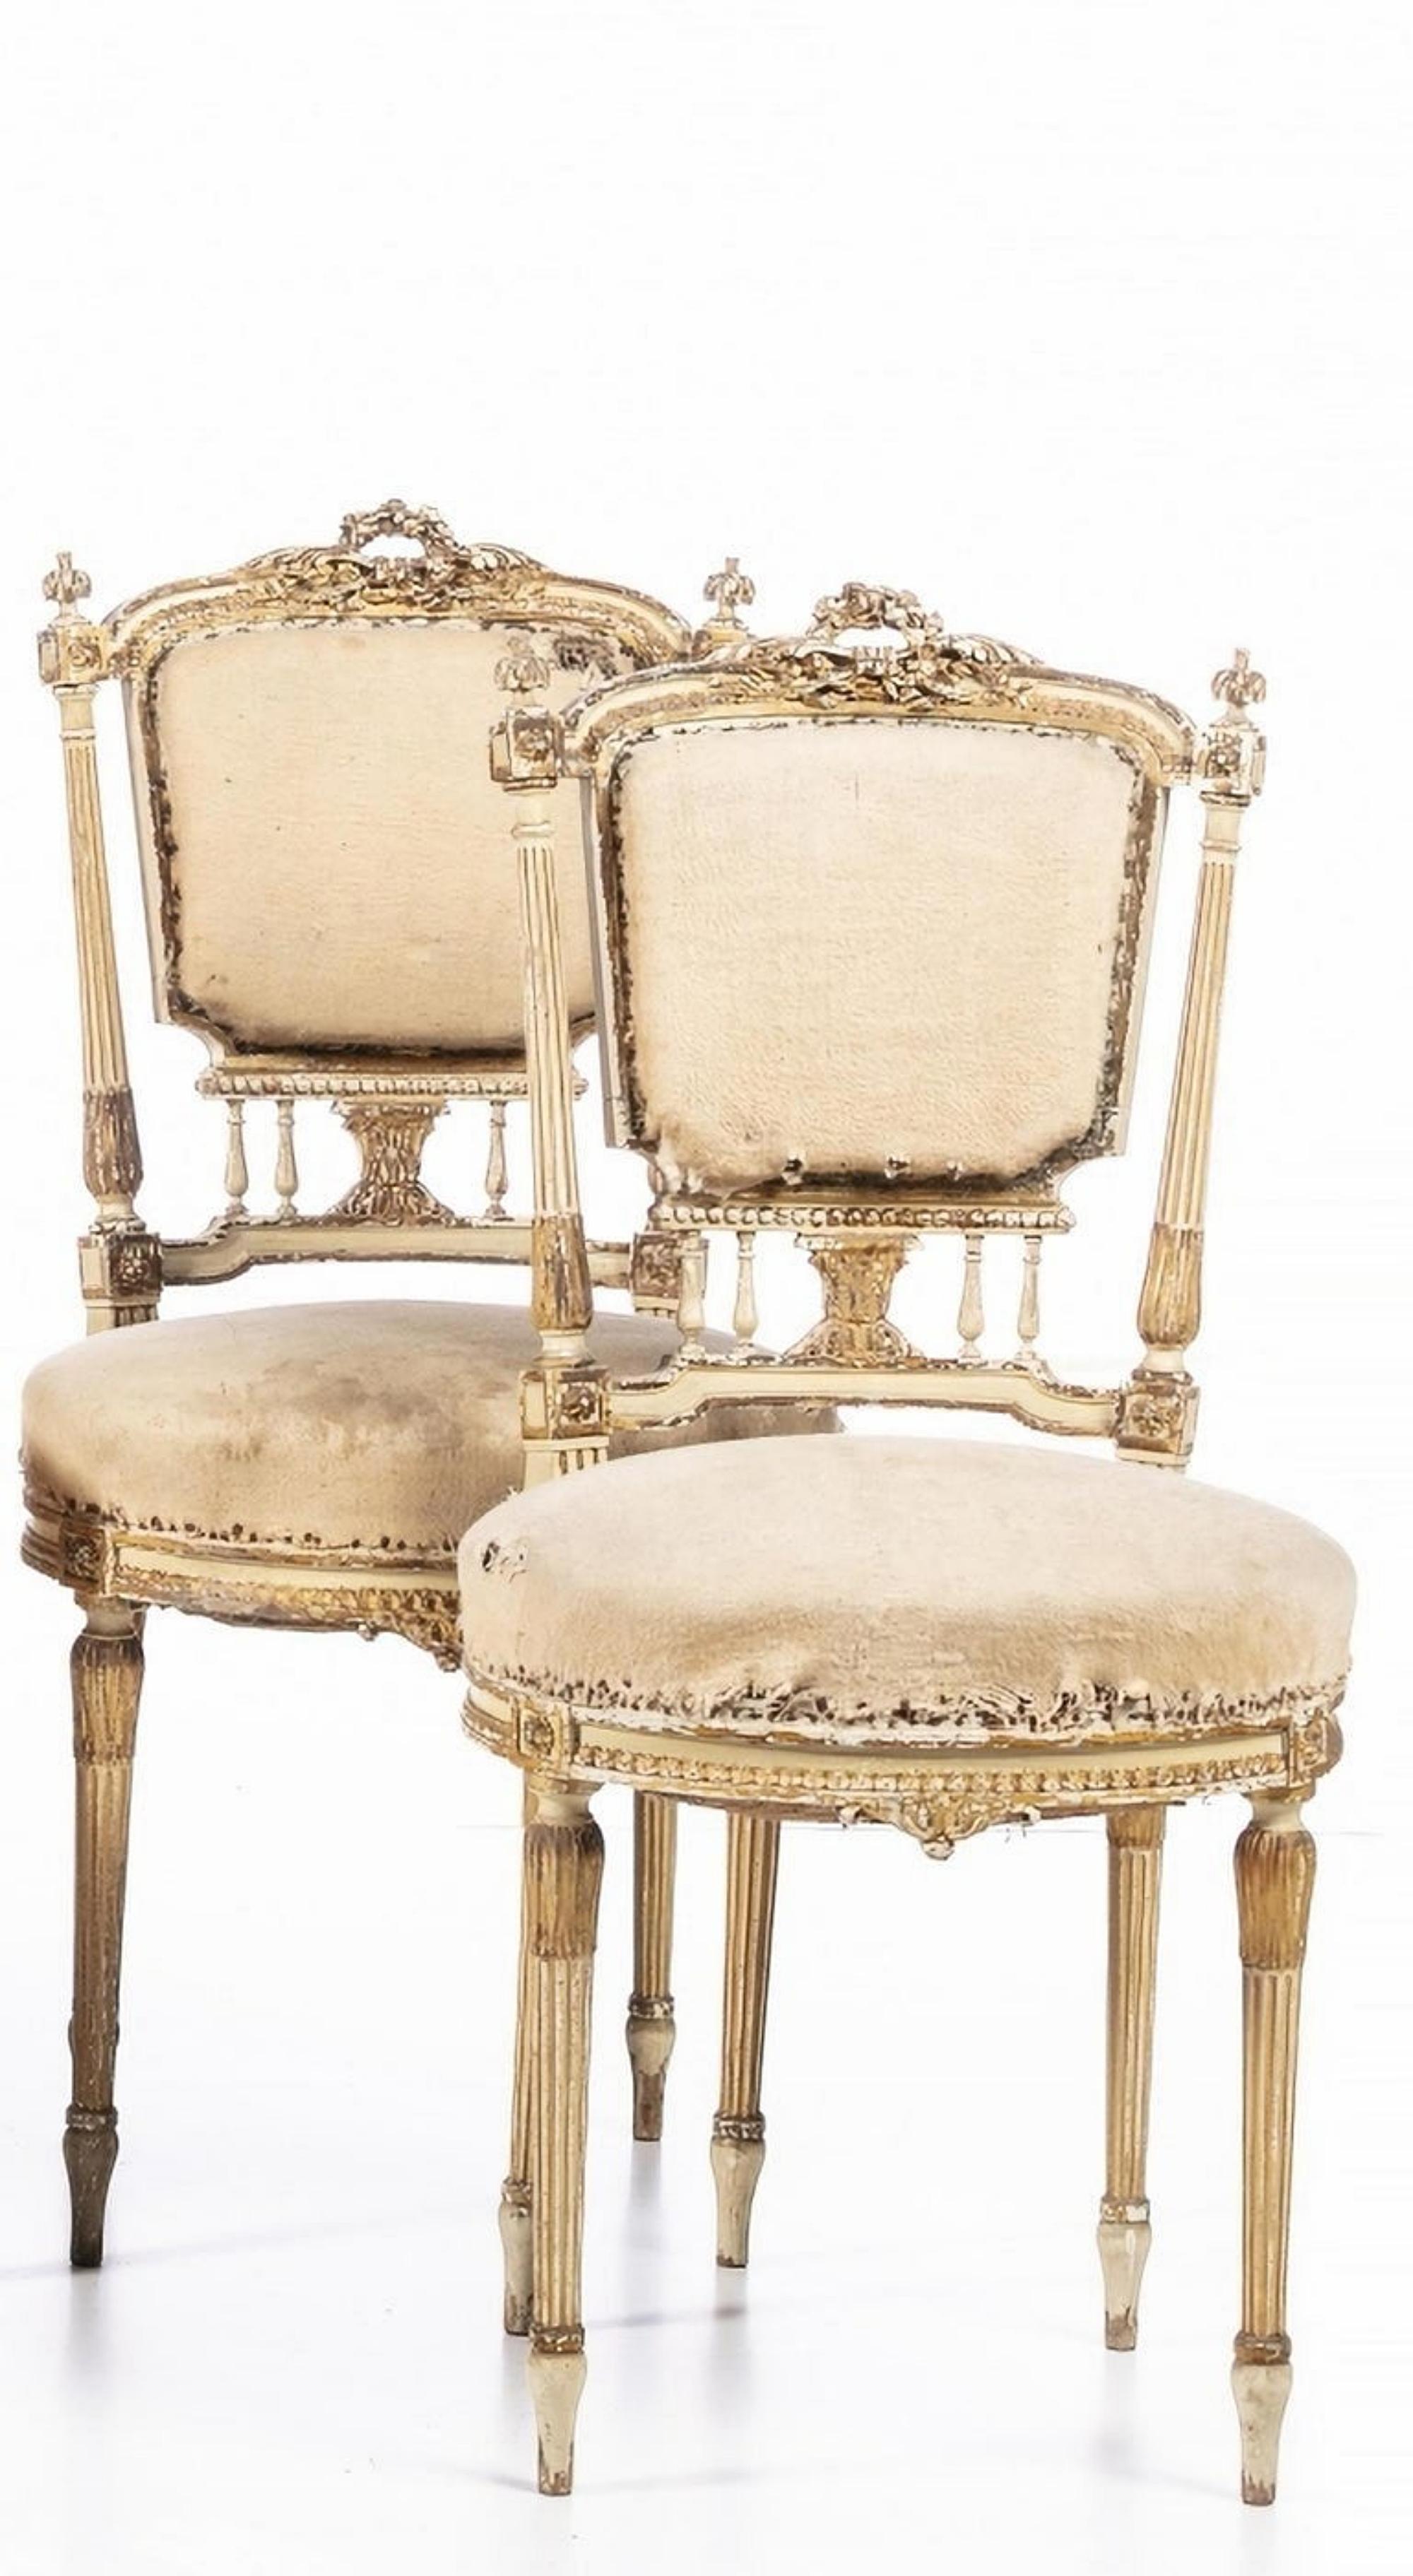 Ensemble 5 chaises françaises
Style Louis XV
19ème siècle
En bois sculpté peint et doré. Assise et dossier rembourrés.
Défauts et anomalies.
Jamais restauré
Dimensions : (plus grand) 96 x 52 x 42 cm.